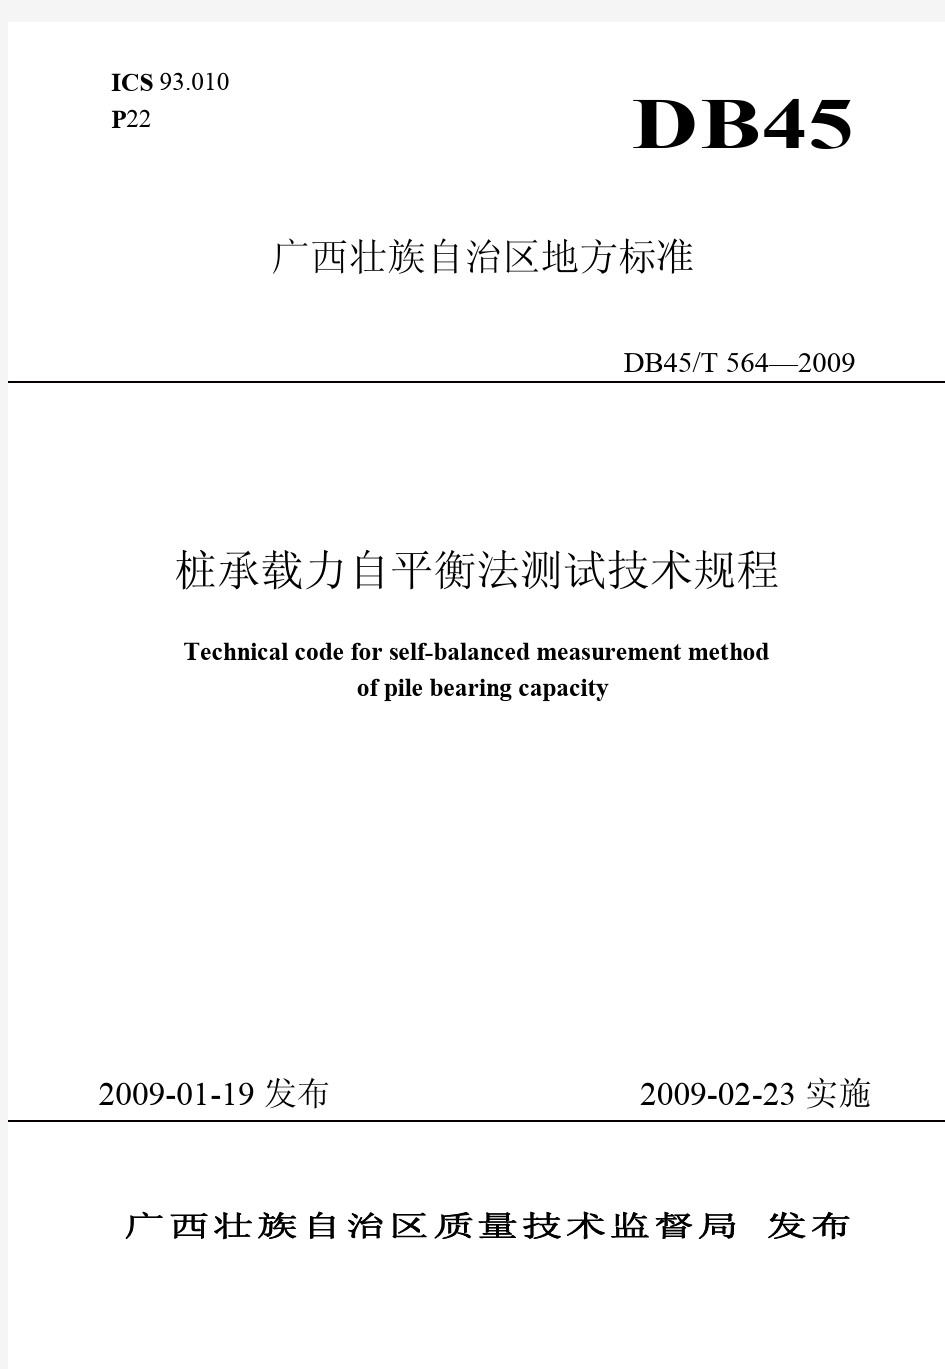 广西壮族自治区地方标准桩承载力自平衡法测试技术规范 DB45 T 564—2009